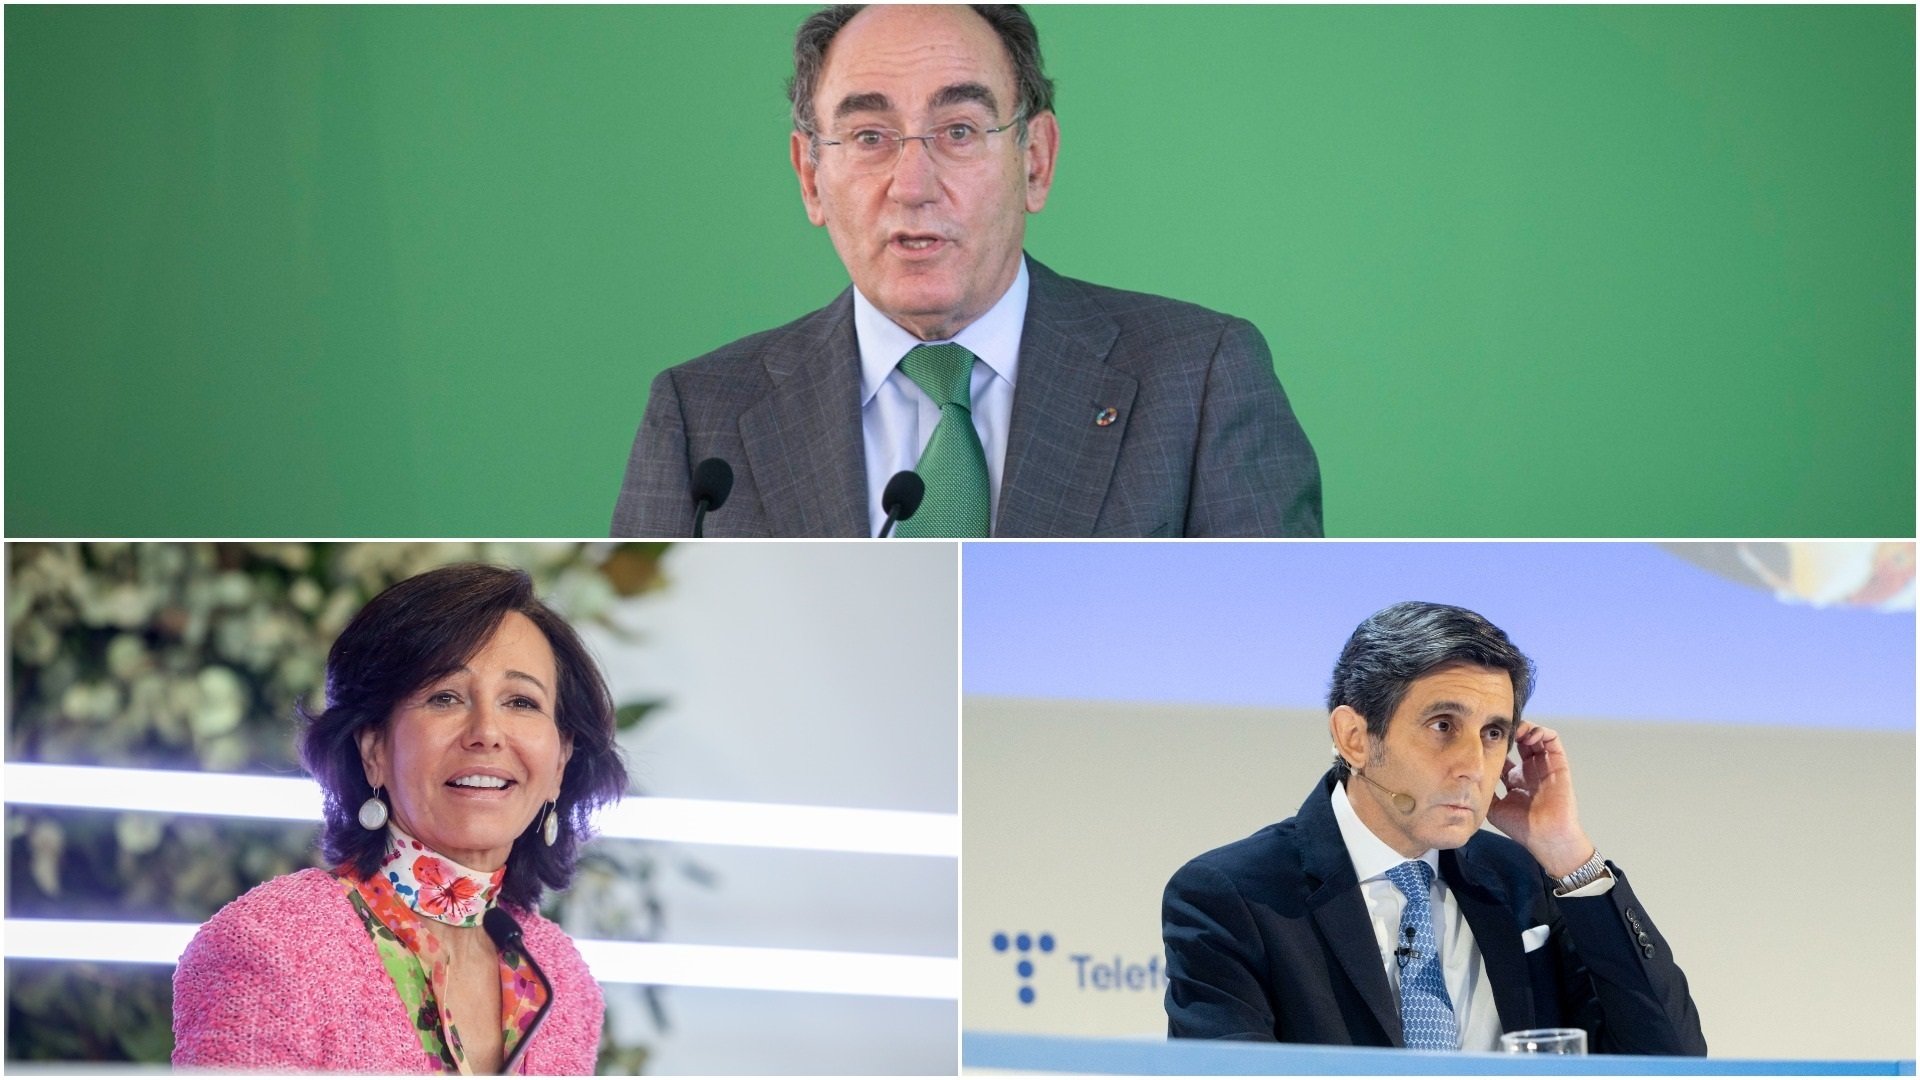 El presidente de Iberdrola, la del Santander y el de Telefónica